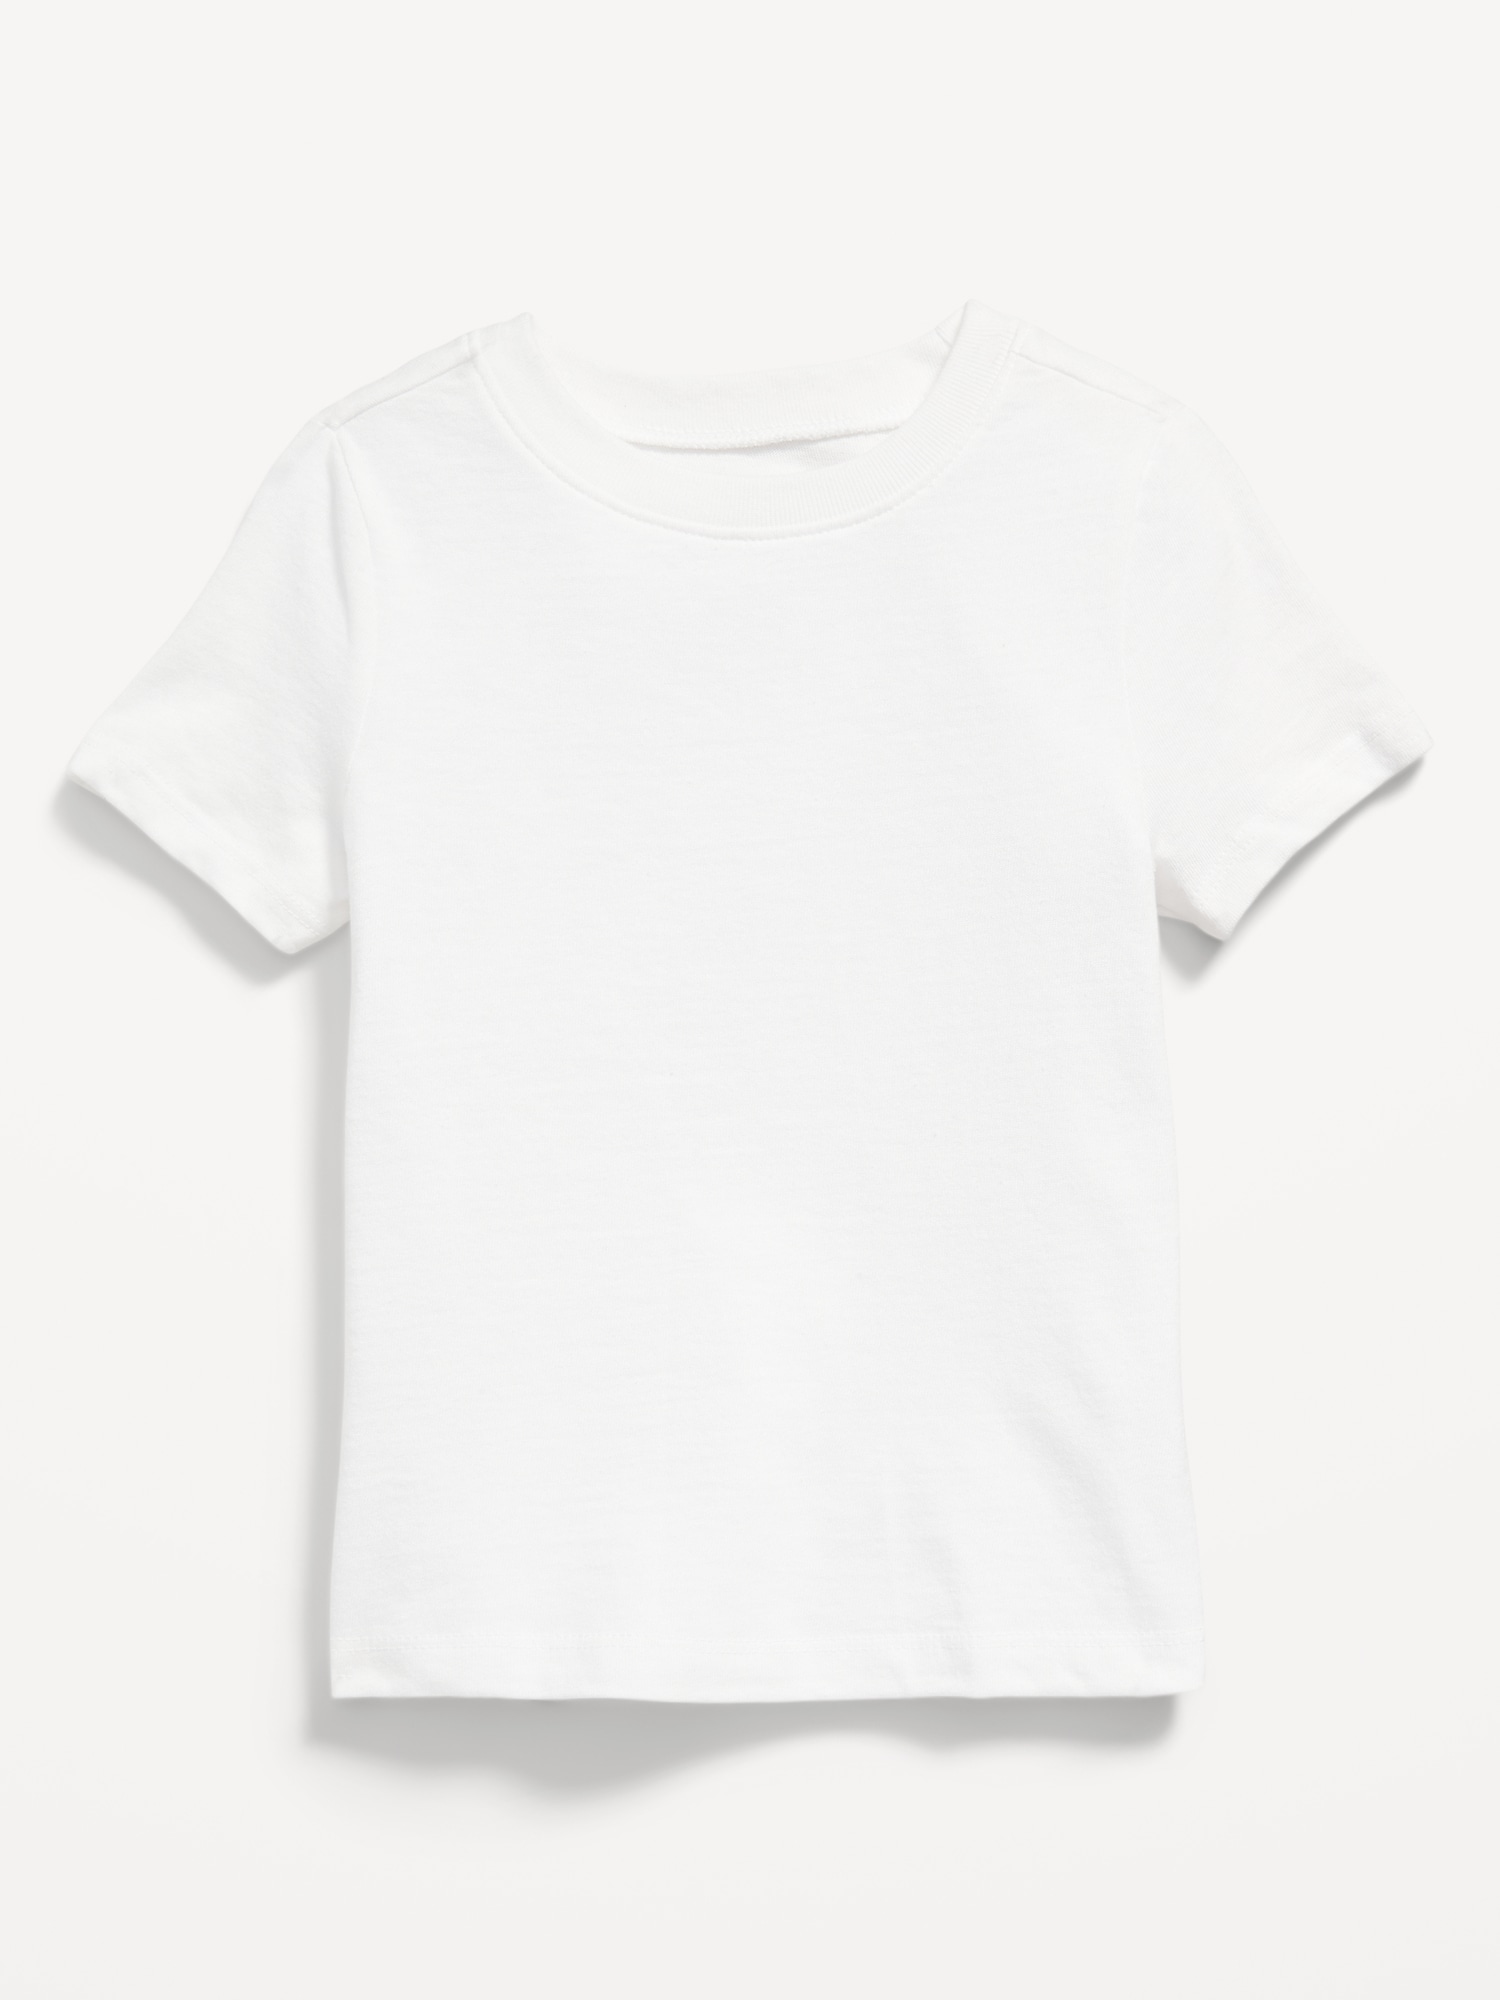 Unisex Short-Sleeve T-Shirt for Toddler | Old Navy